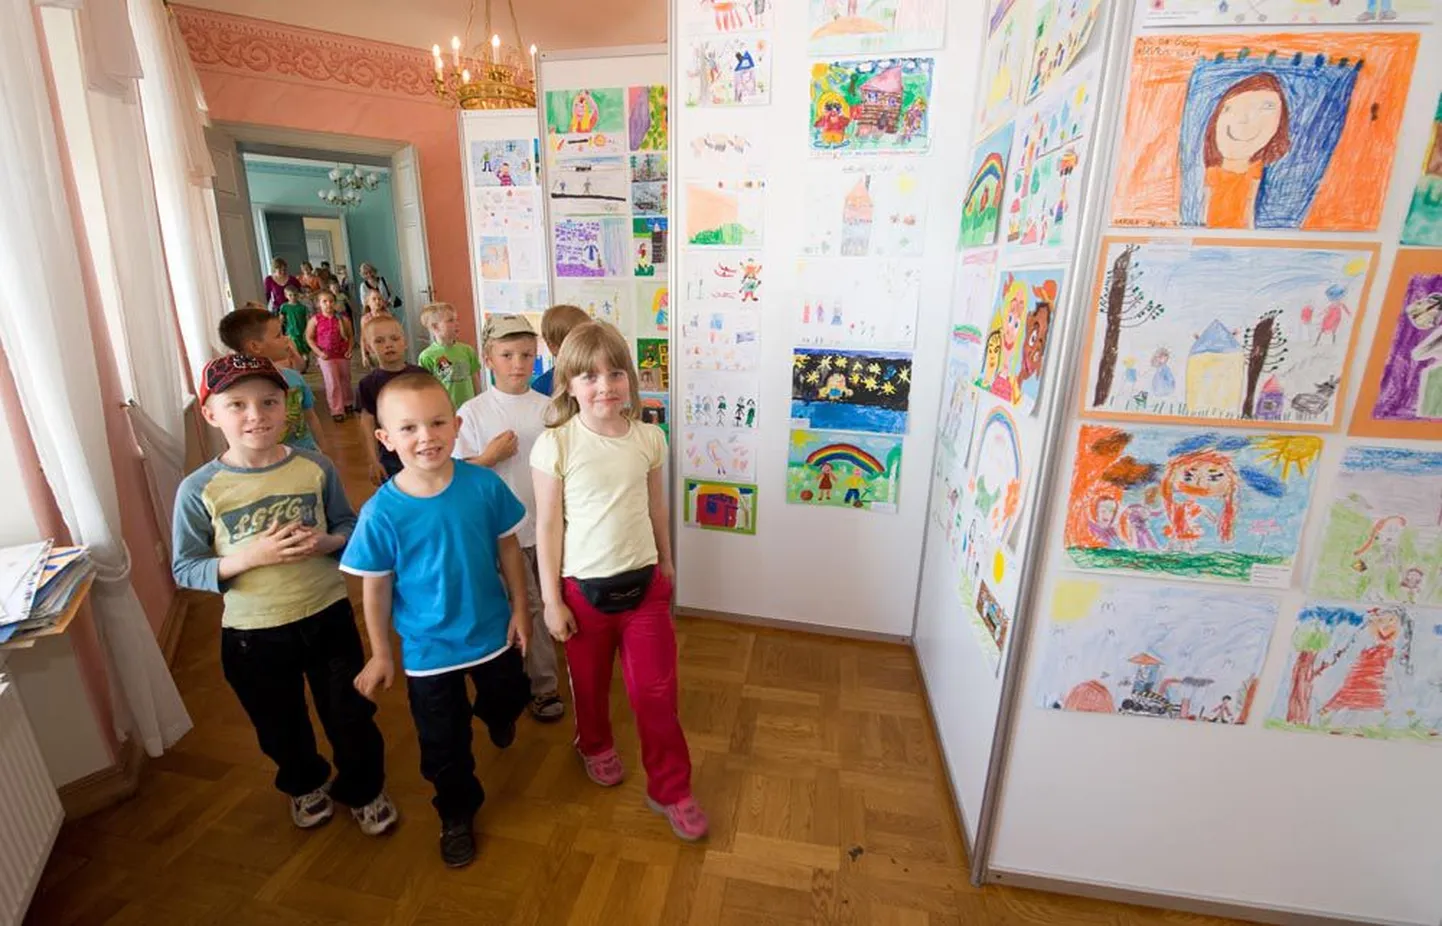 Eile vallutasid õiguskantsleri büroo esimesed lapsed – Järvamaa Väätsa lasteaia põngerjad, kes tulid koos kasvatajatega lasteaia lõpu puhul Tallinna külastama.